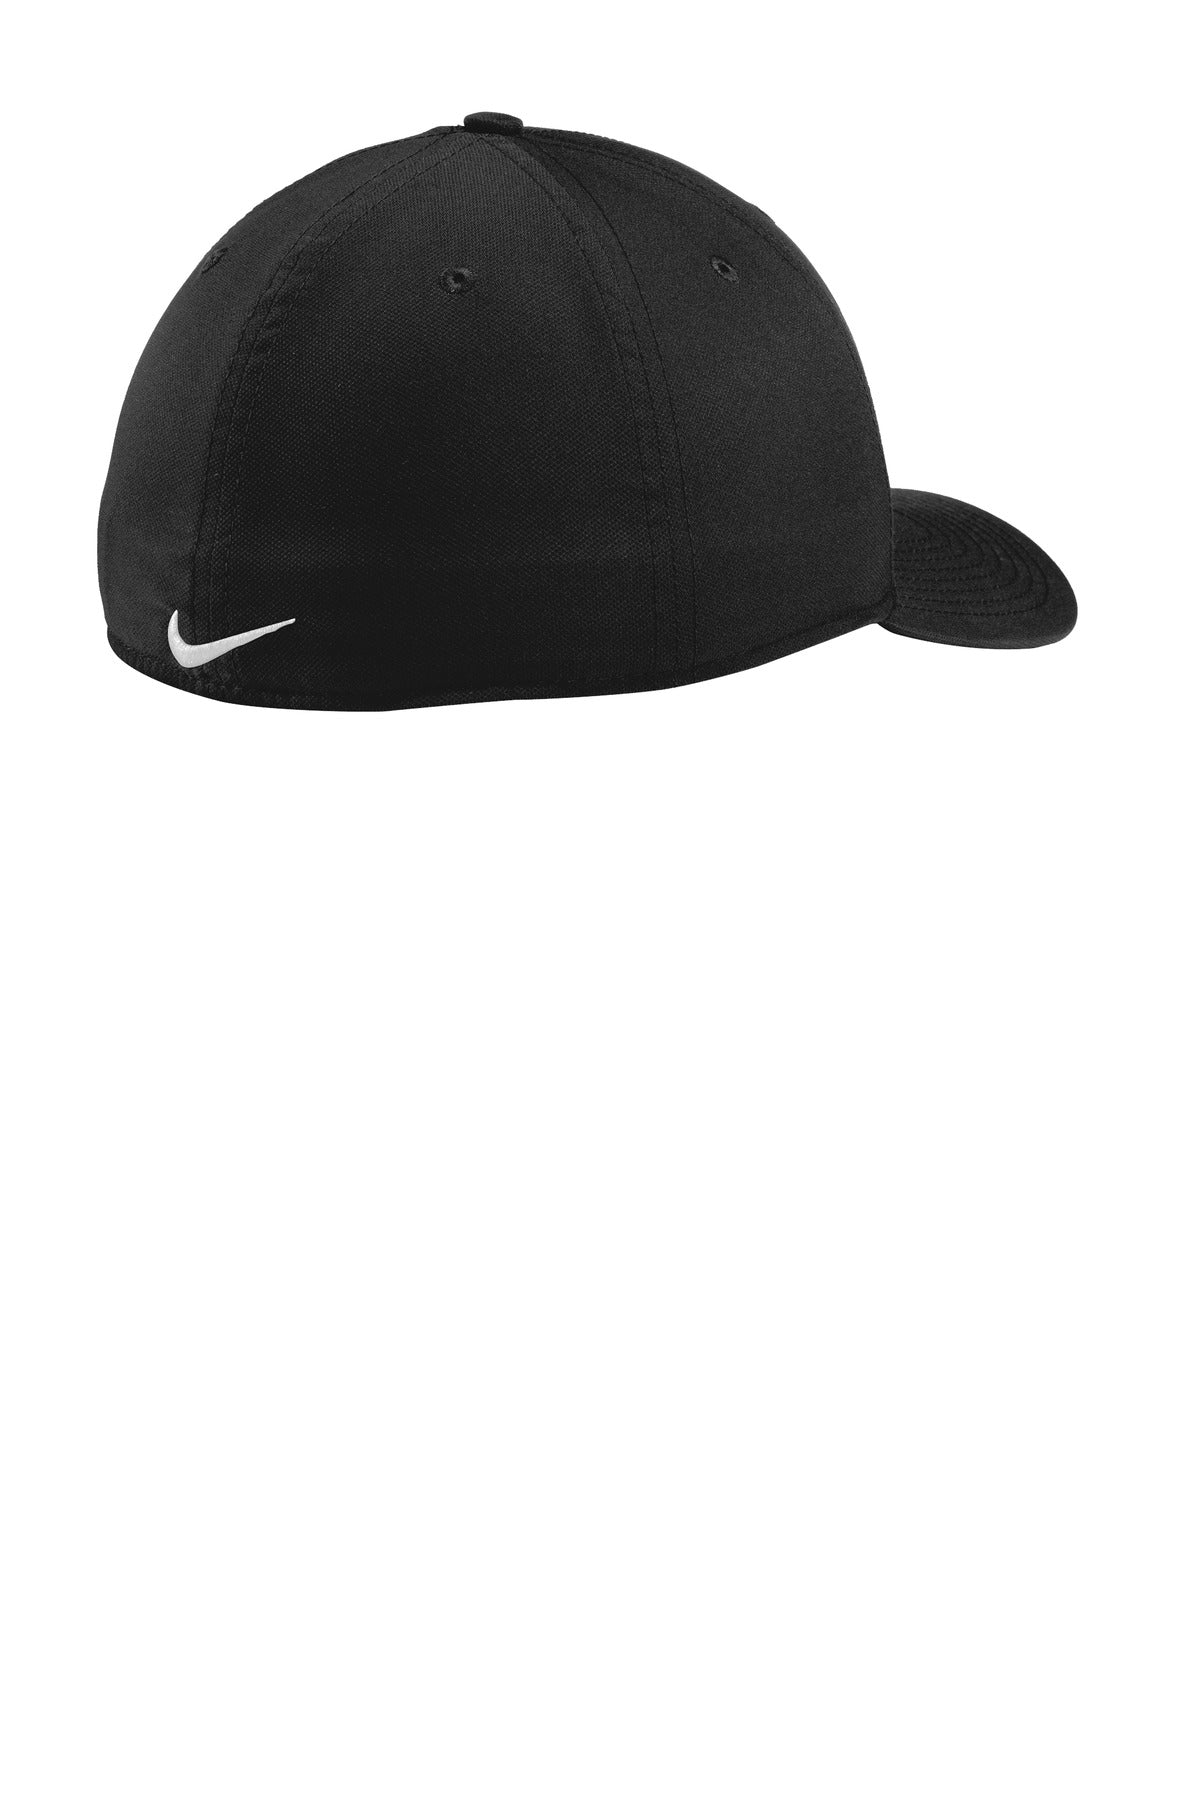 Nike NKAA1860 Dri-Fit Classic 99 Cap Black/ White S/M